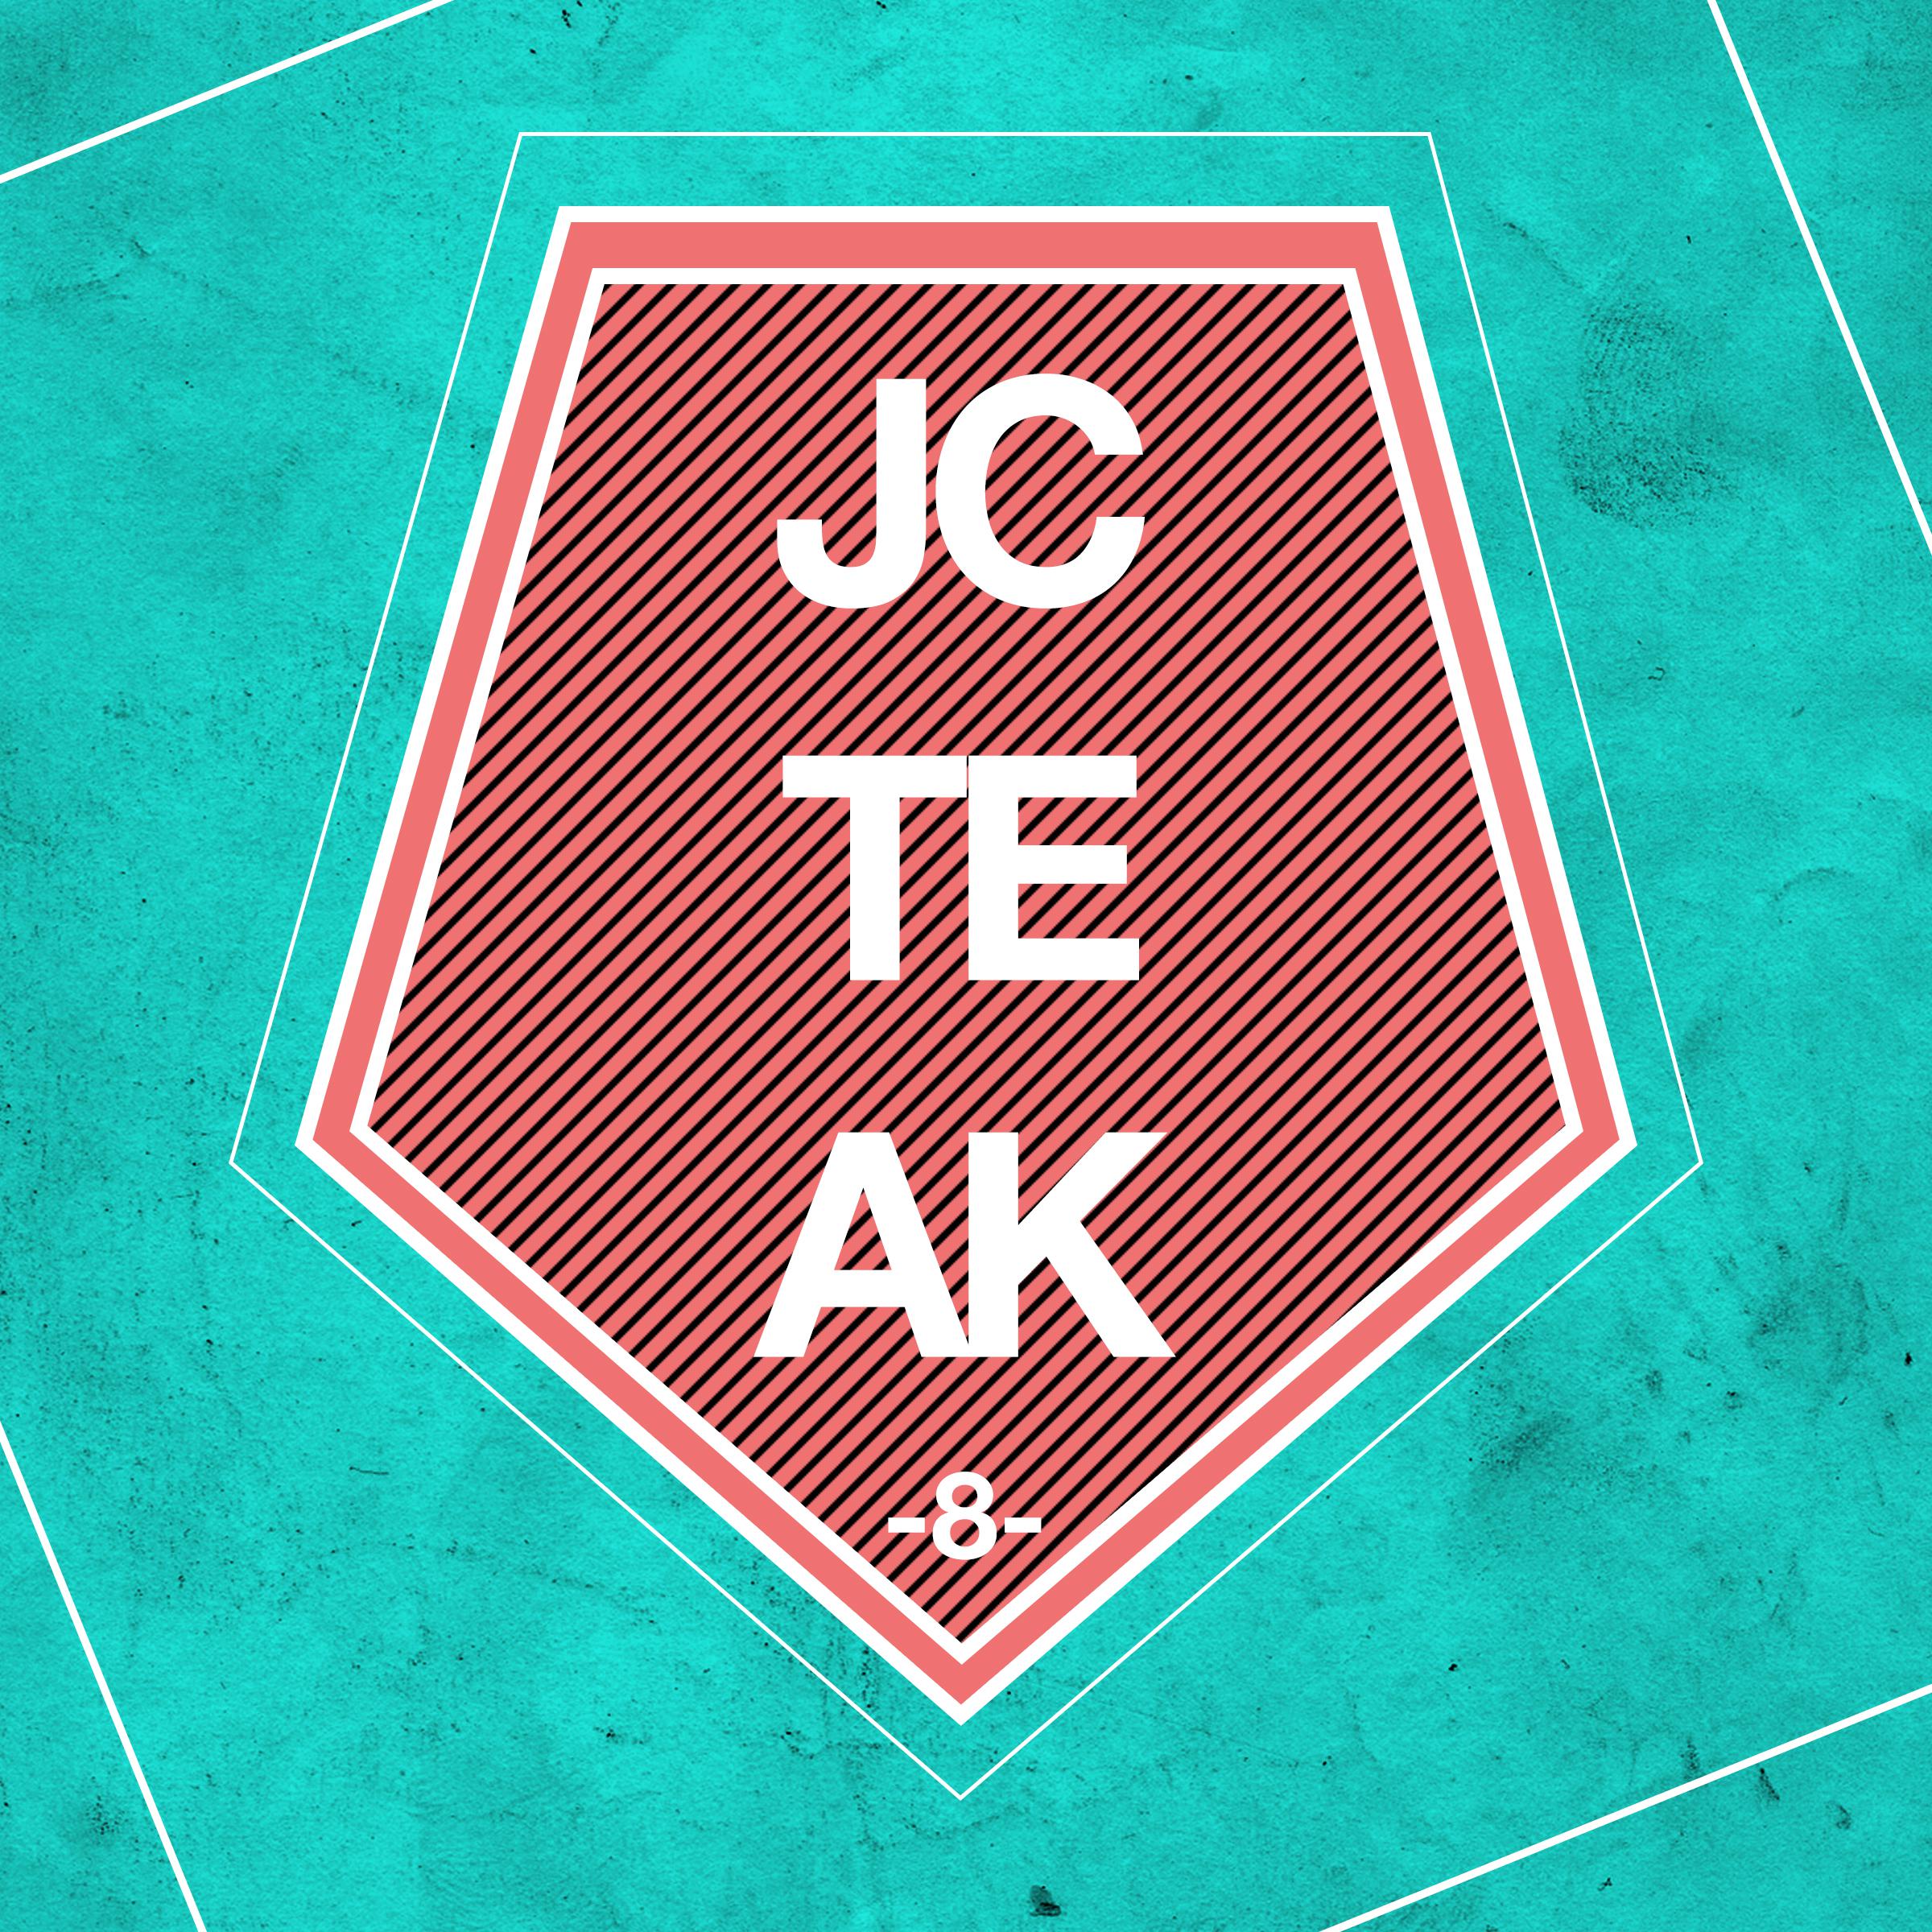 JCTEAK, Vol. 8